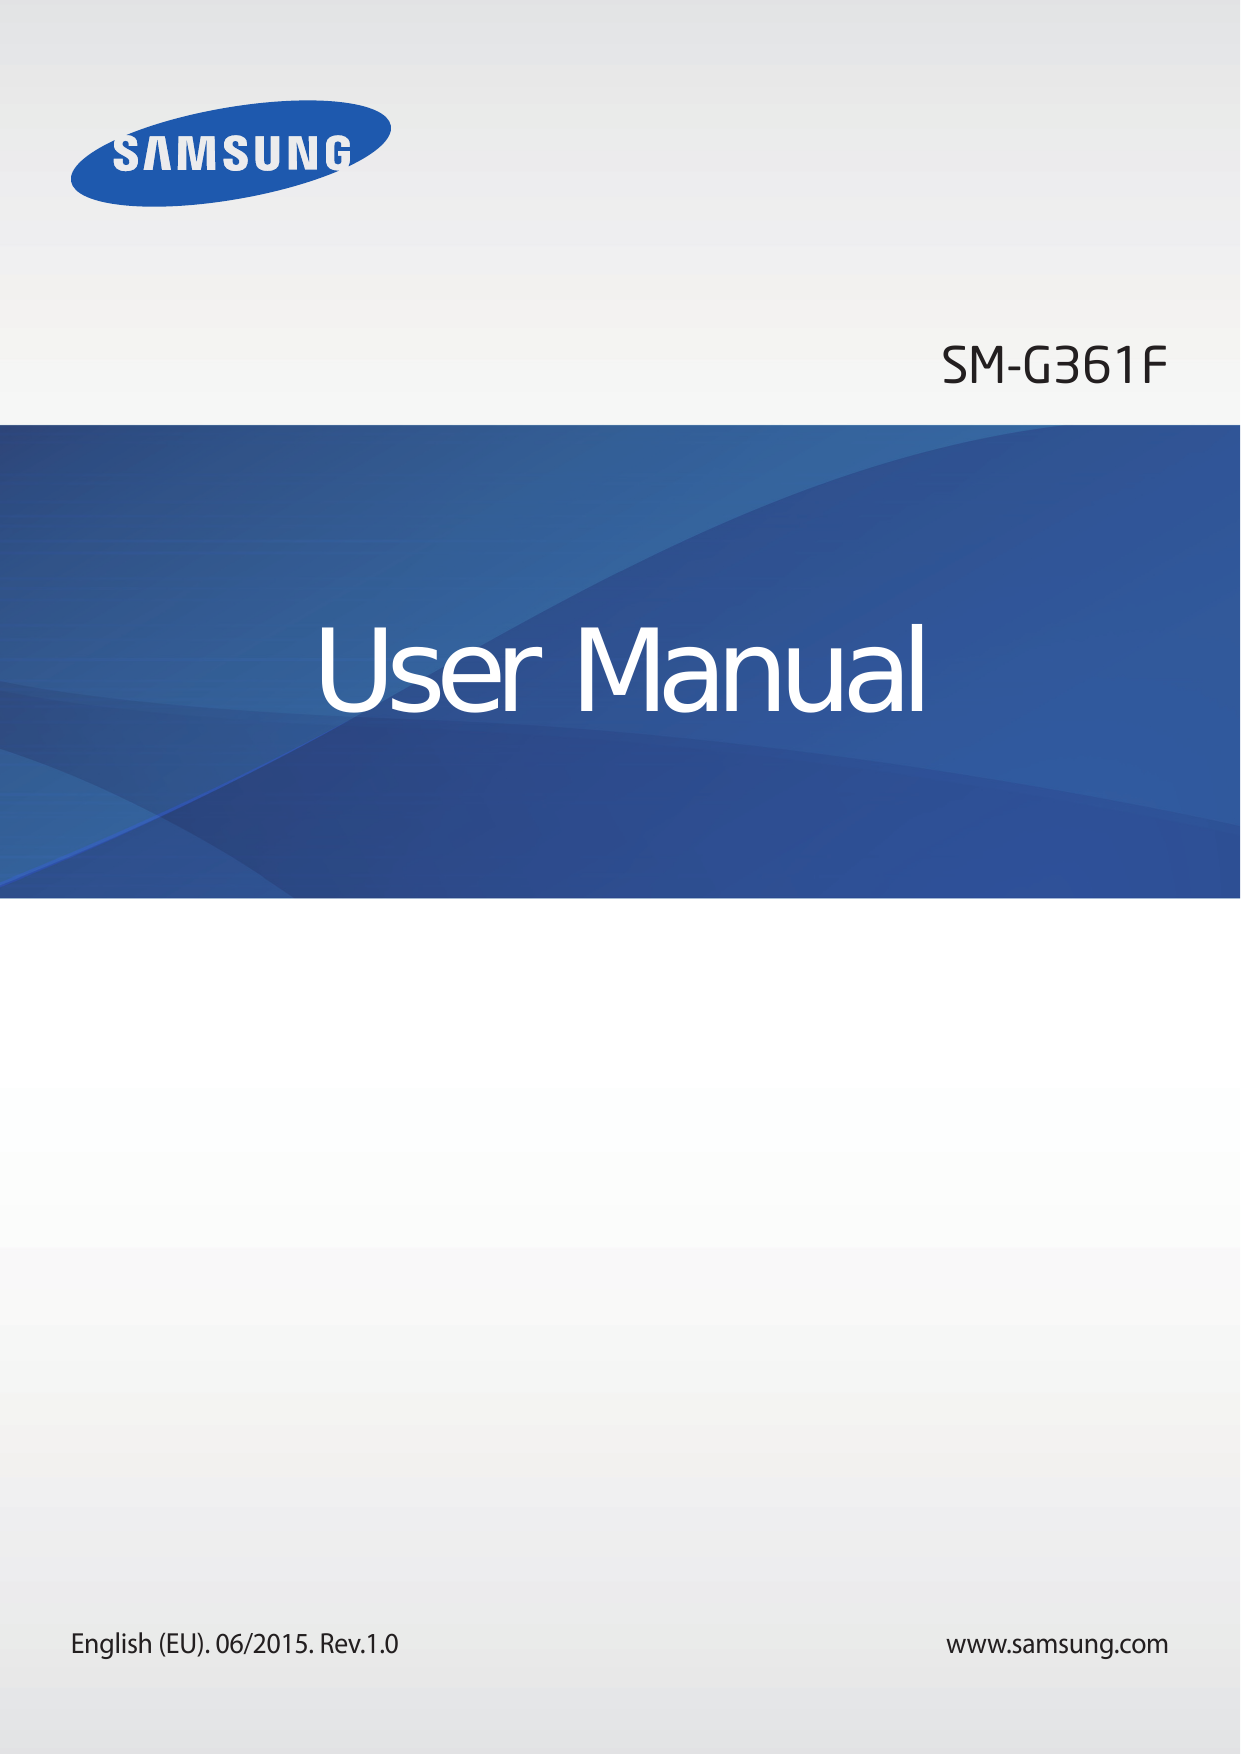 SM-G361FUser ManualEnglish (EU). 06/2015. Rev.1.0www.samsung.com